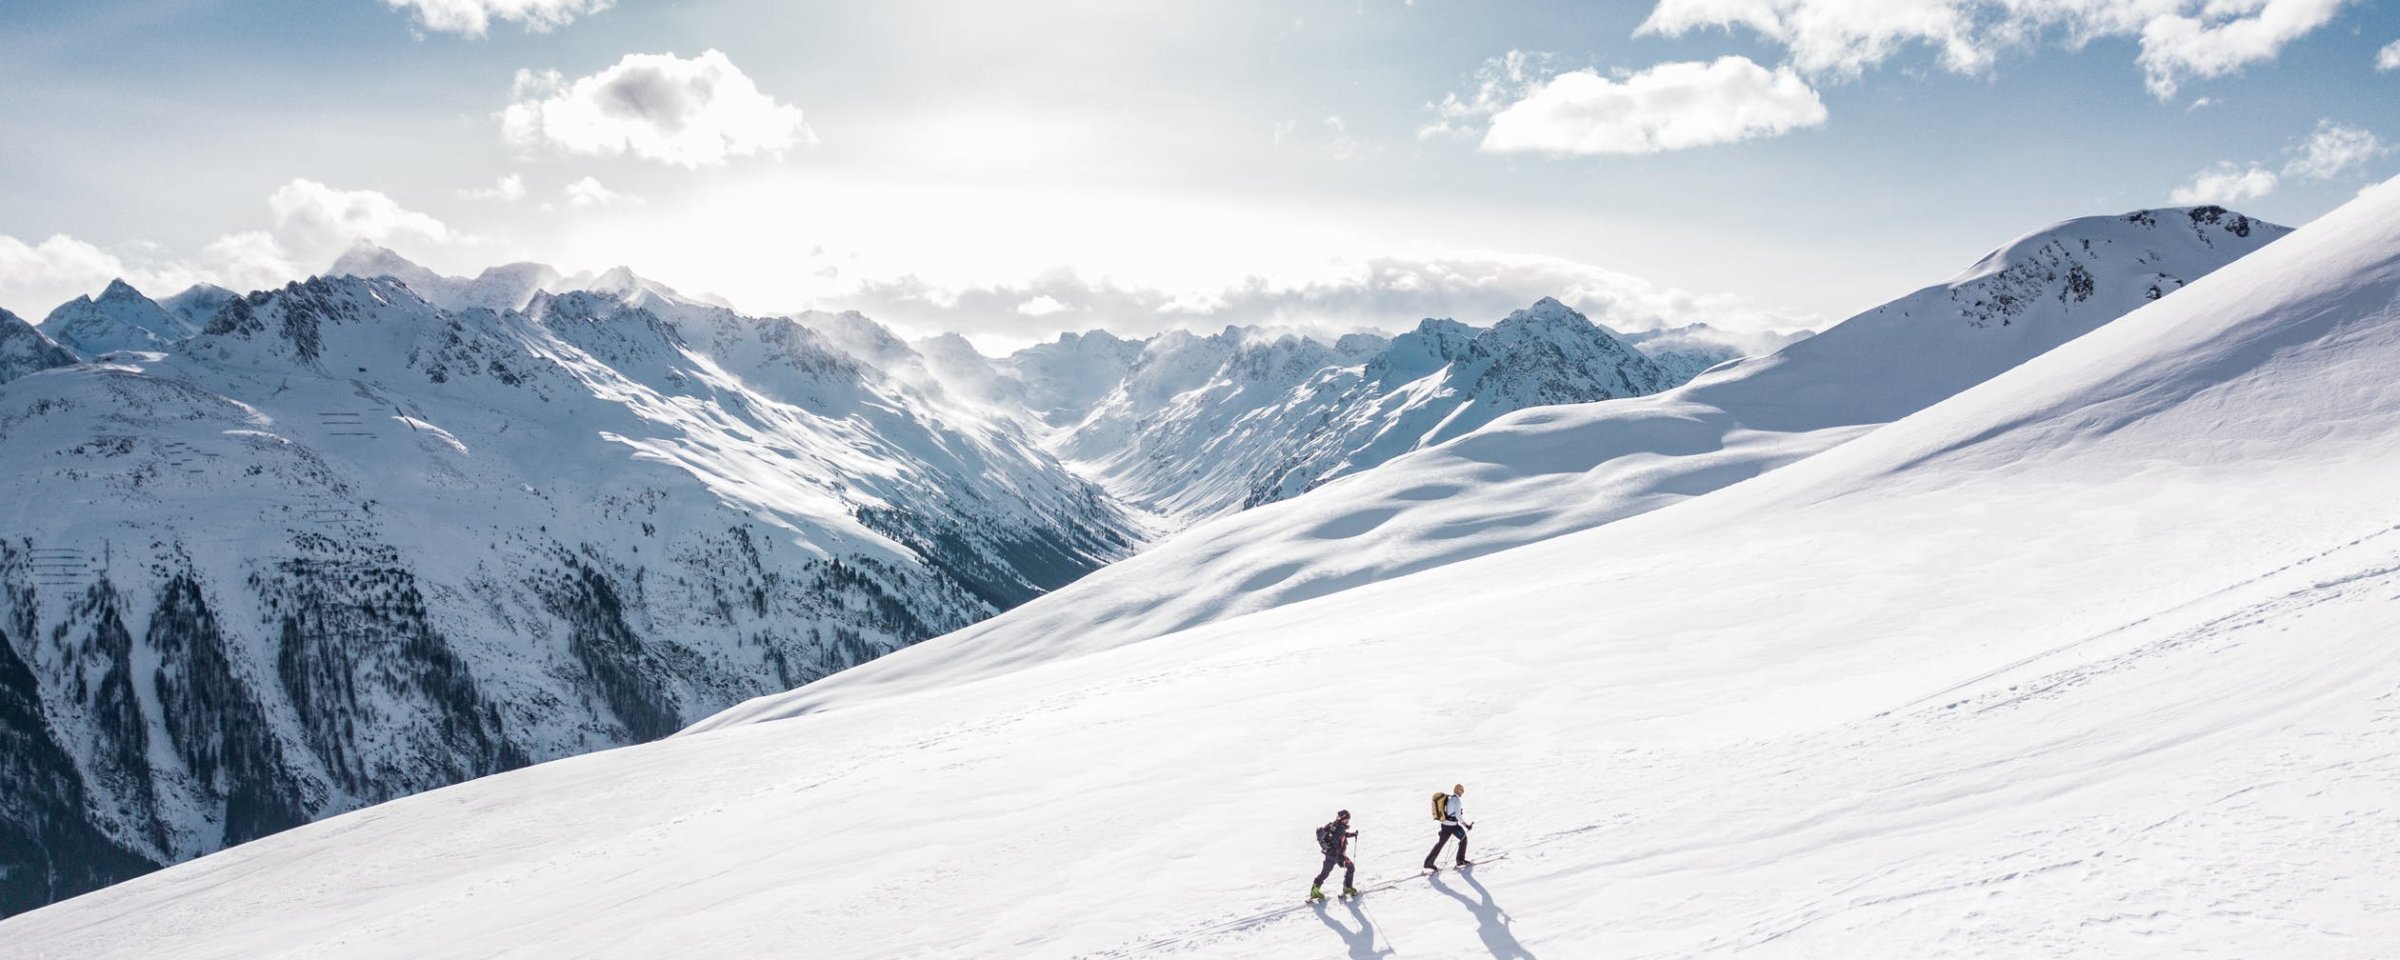 Two skiers ski-touring